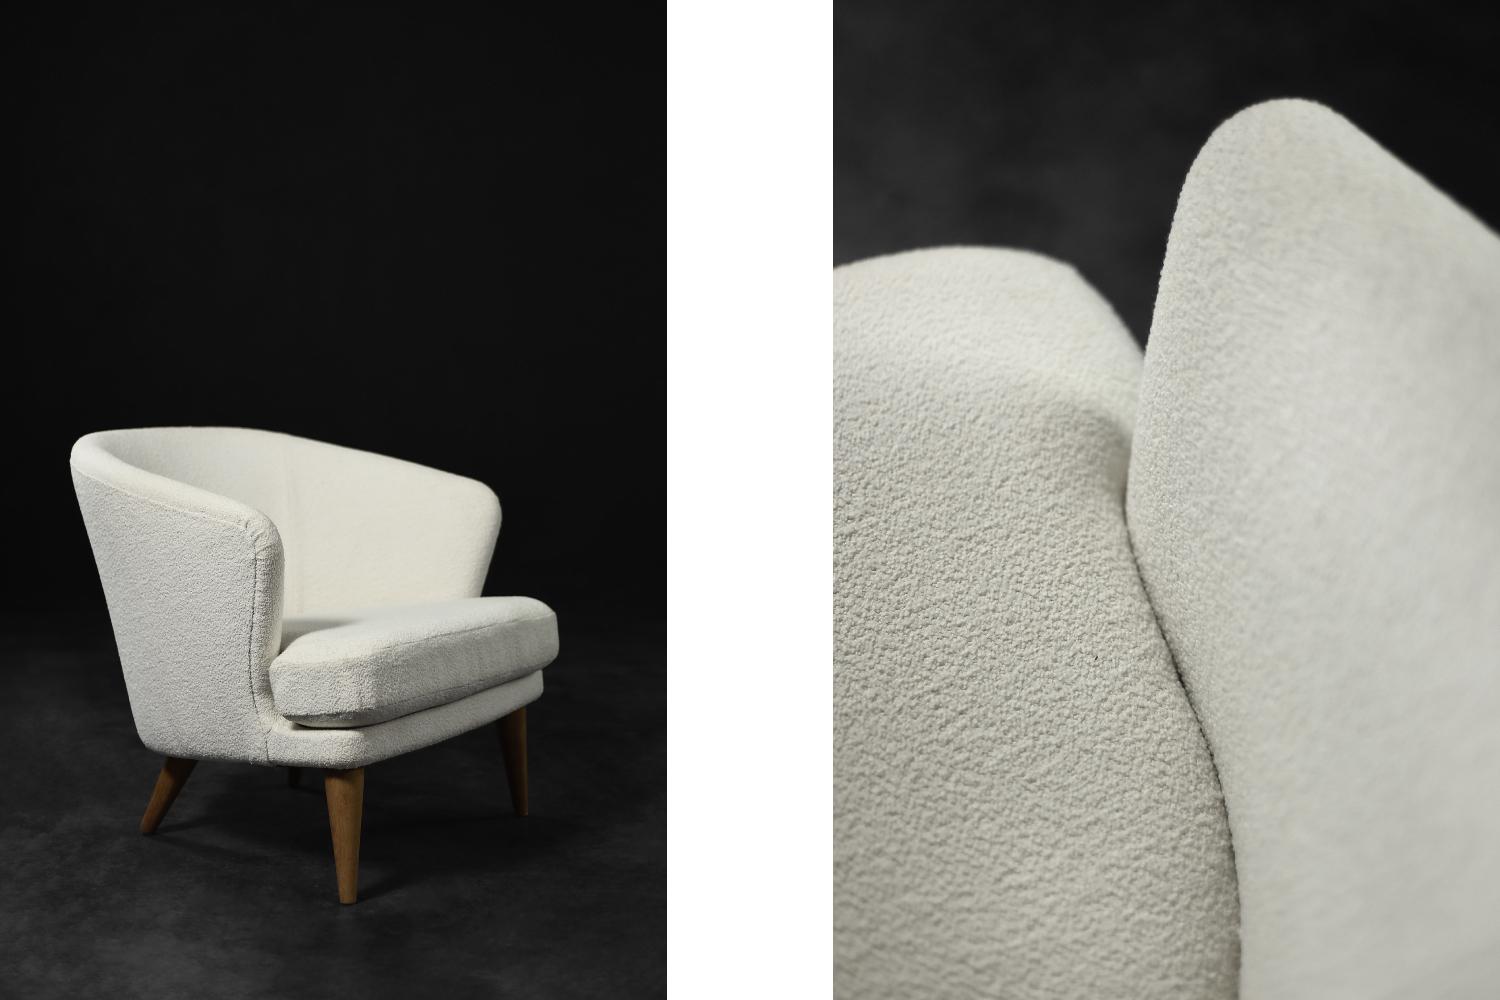 Ce fauteuil moderniste bas a été produit en Scandinavie dans les années 1960. Il se caractérise par un dossier arrondi qui se fond harmonieusement dans les accoudoirs. Le dossier et l'assise ont été retapissés avec un tissu blanc épais de haute